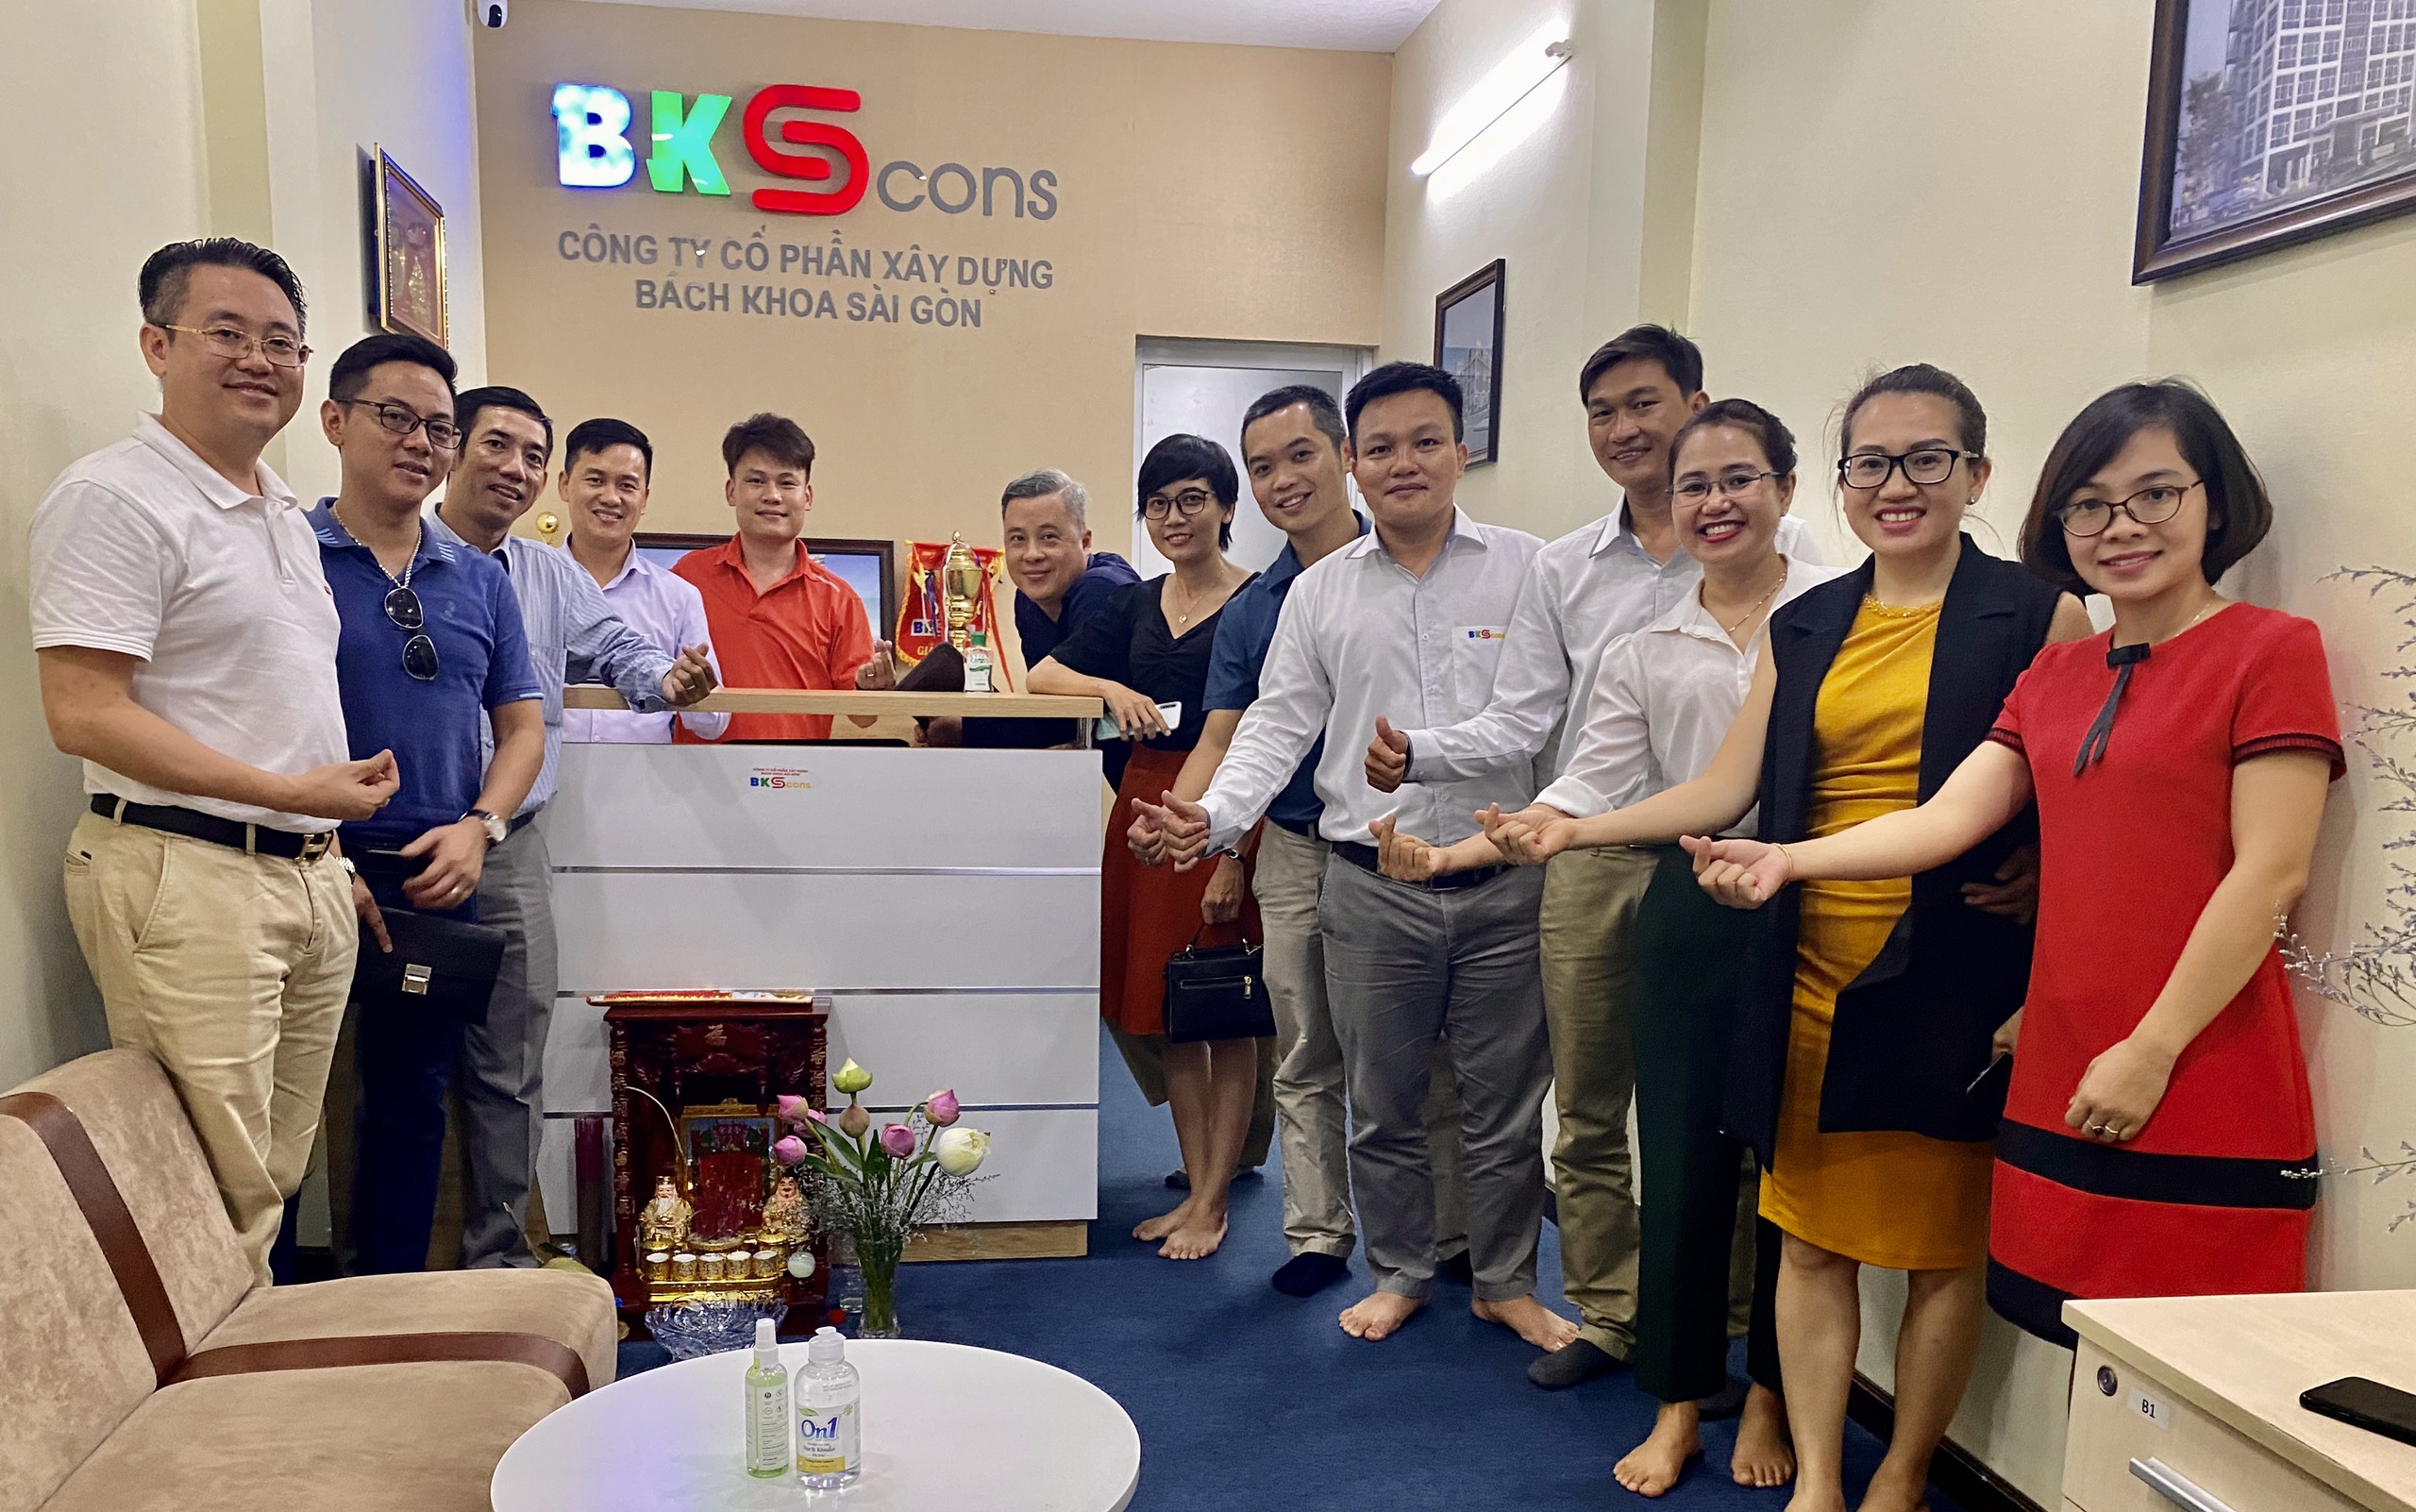 Công ty Cổ phần Xây dựng Bách Khoa Sài Gòn (BKScons)